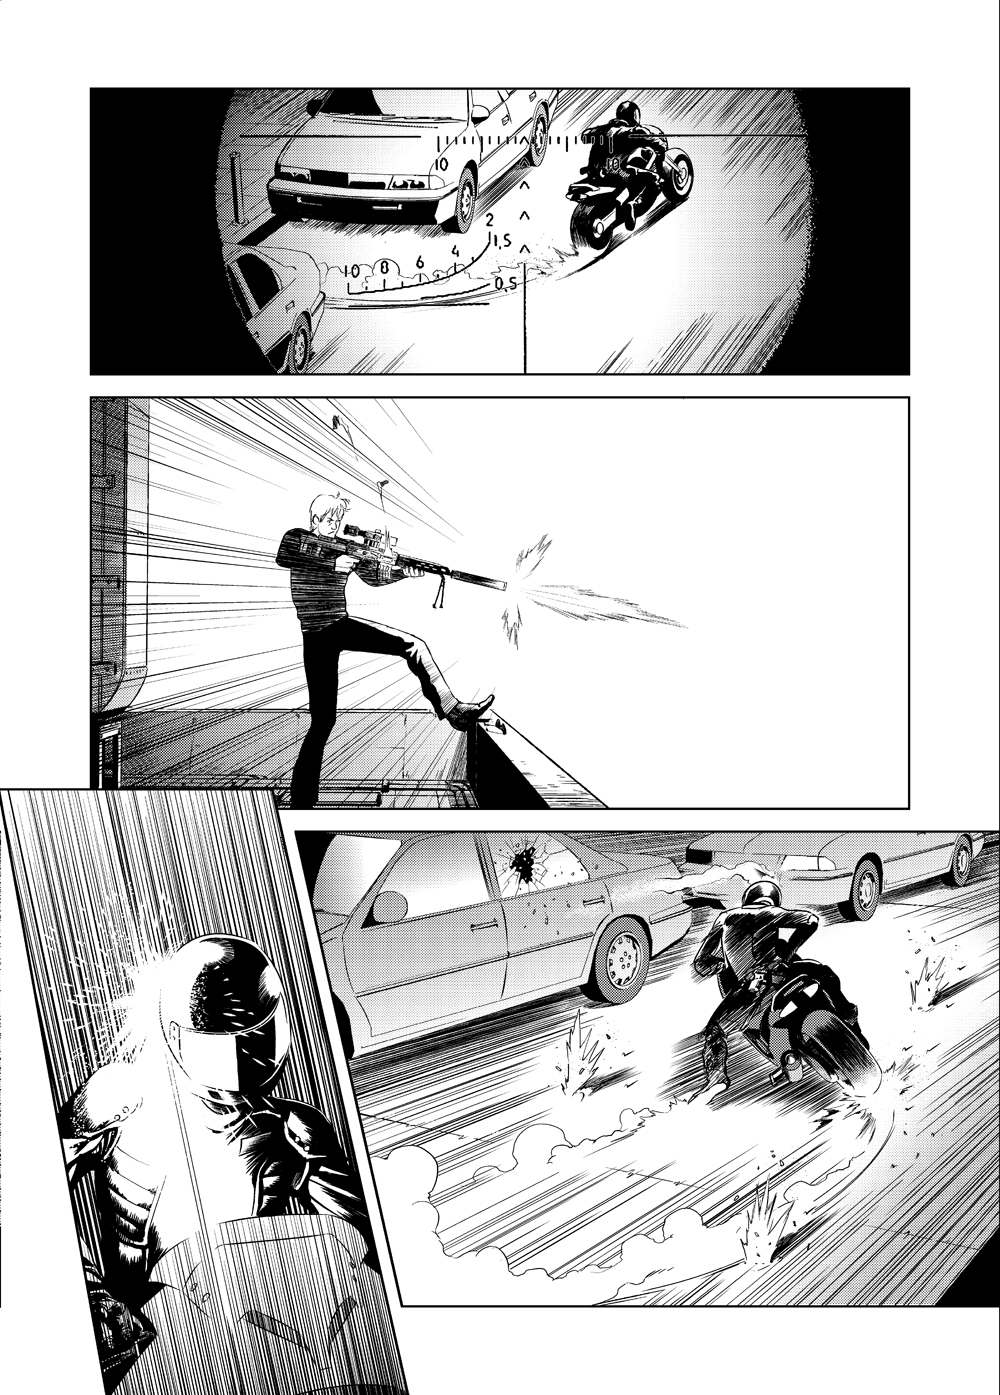 Zero point manga agnakamura Agua Negra Ediciones hqm